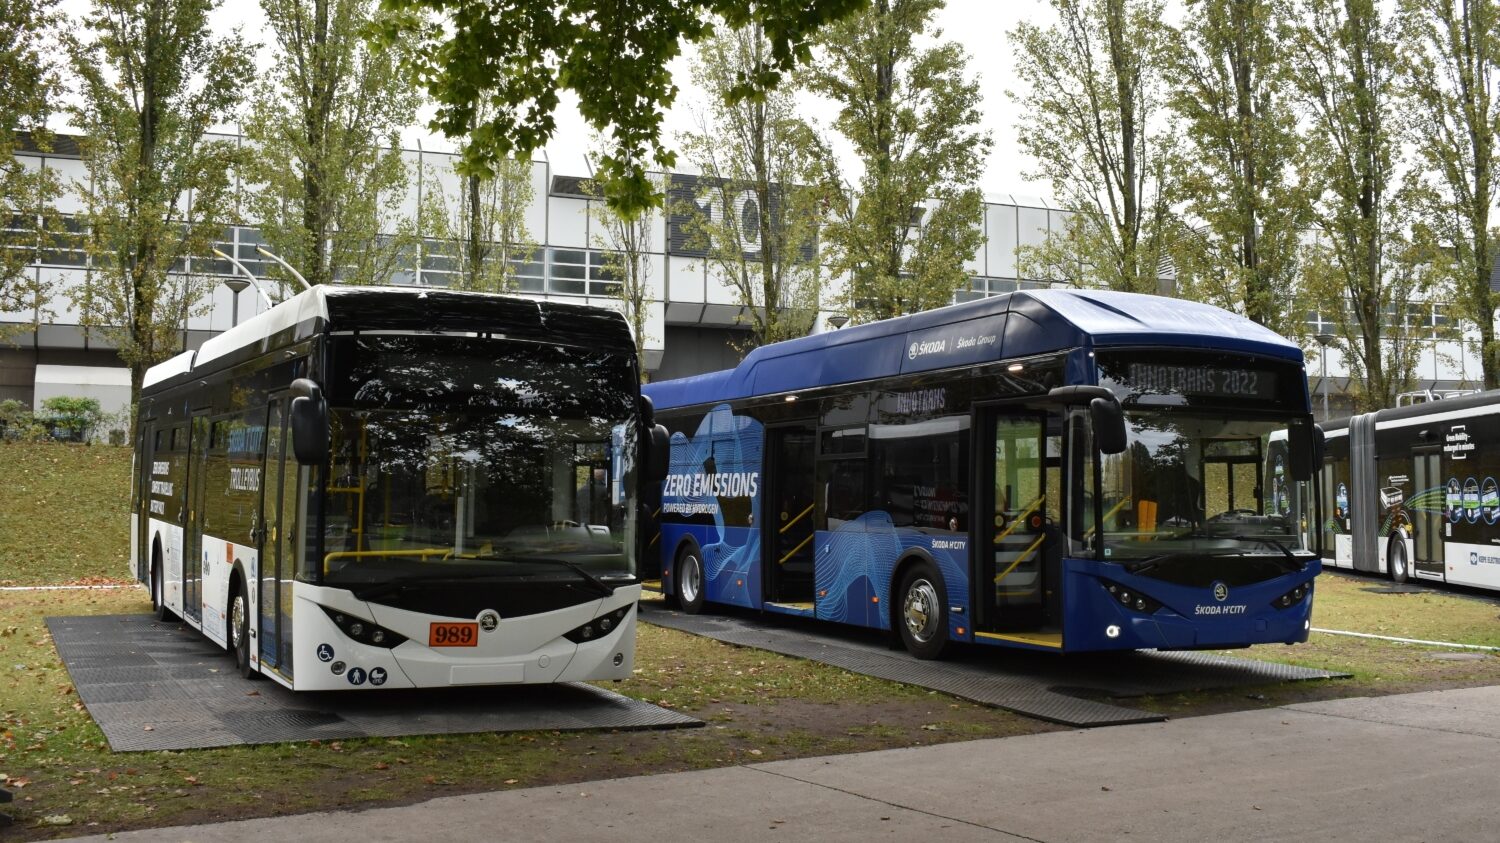 Trolejbus Škoda 36 Tr vedle prototypu vodíkového elektrobusu H’City, jenž je veden jako typ Škoda 36 BB, neboť využívá homologaci elektrobusu. Snímek pochází z veletrhu InnoTrans, kde si vodíkový autobus odbyl svou premiéru. (foto: Libor Hinčica)